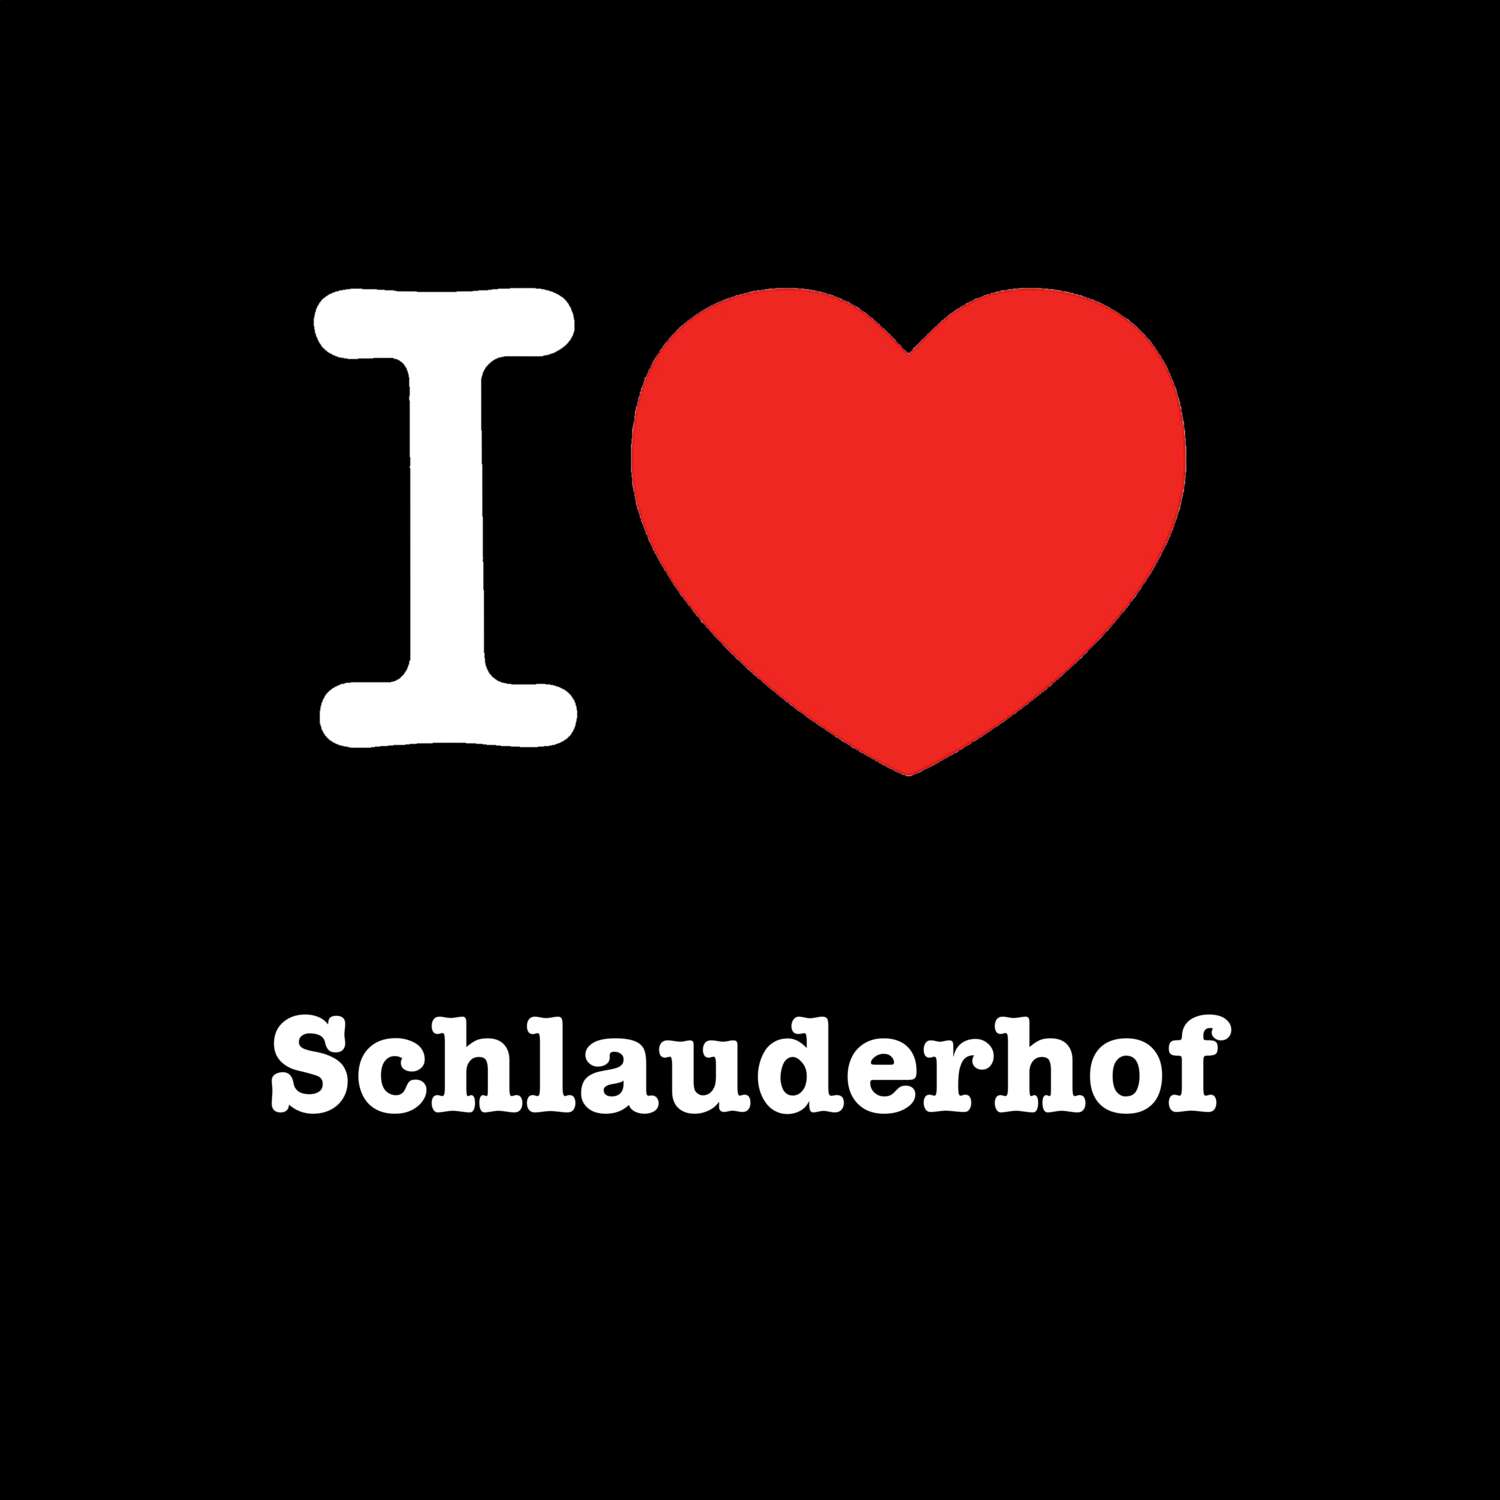 Schlauderhof T-Shirt »I love«